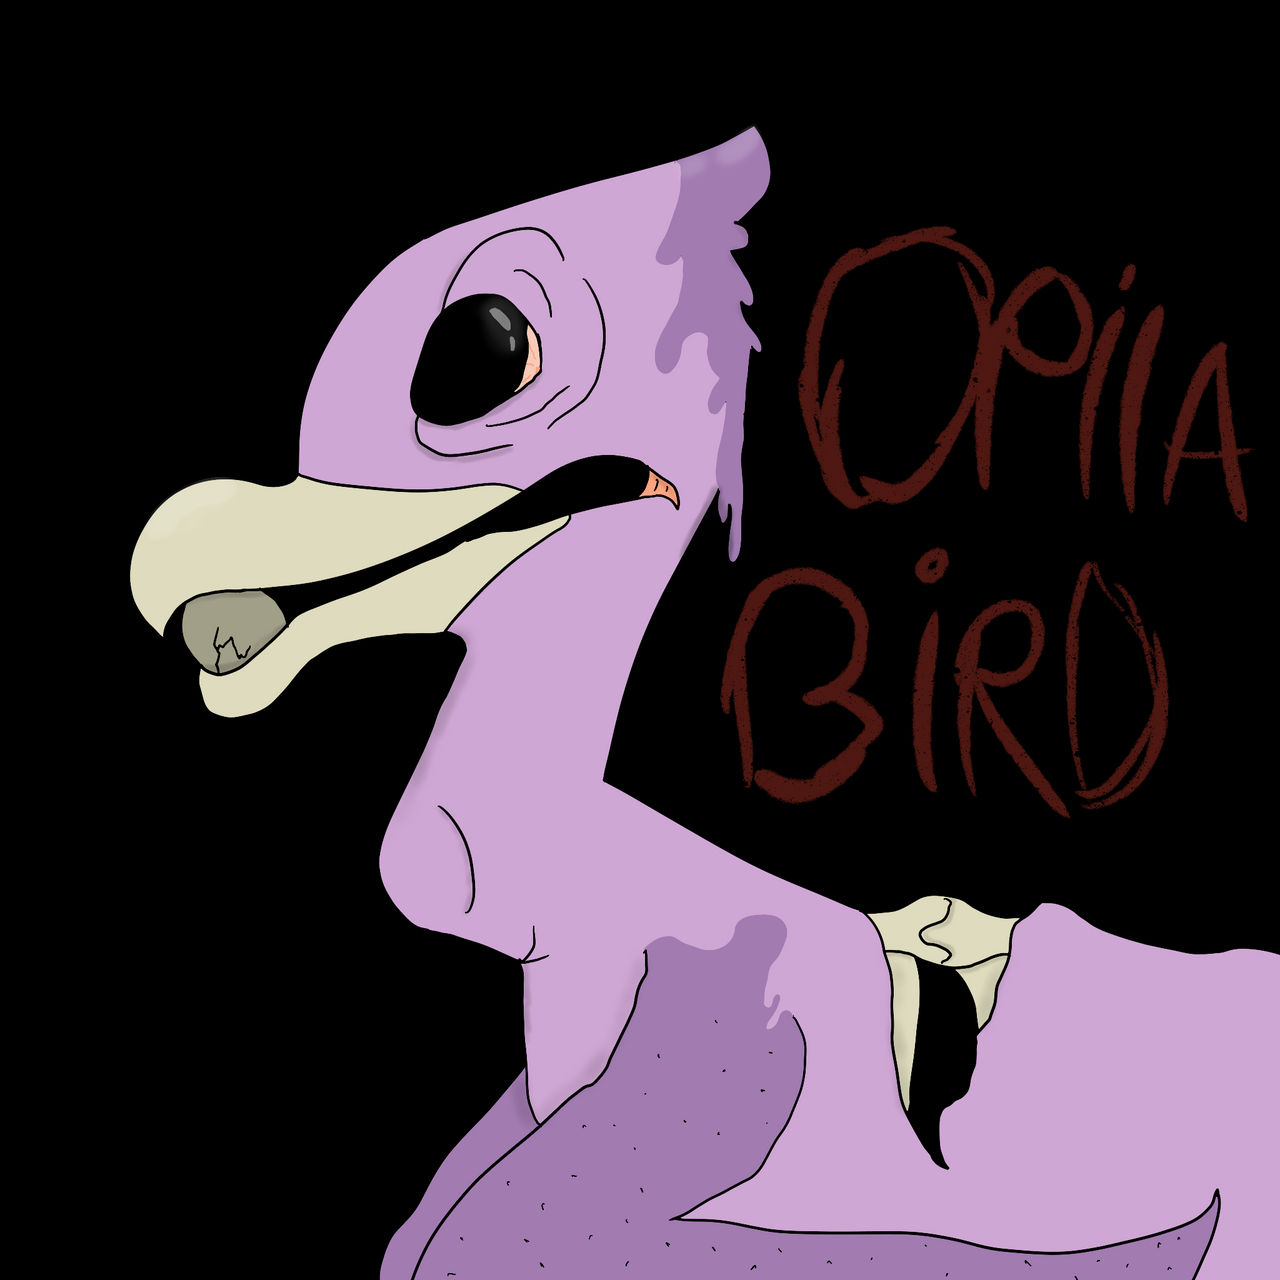 Opila Bird Theme